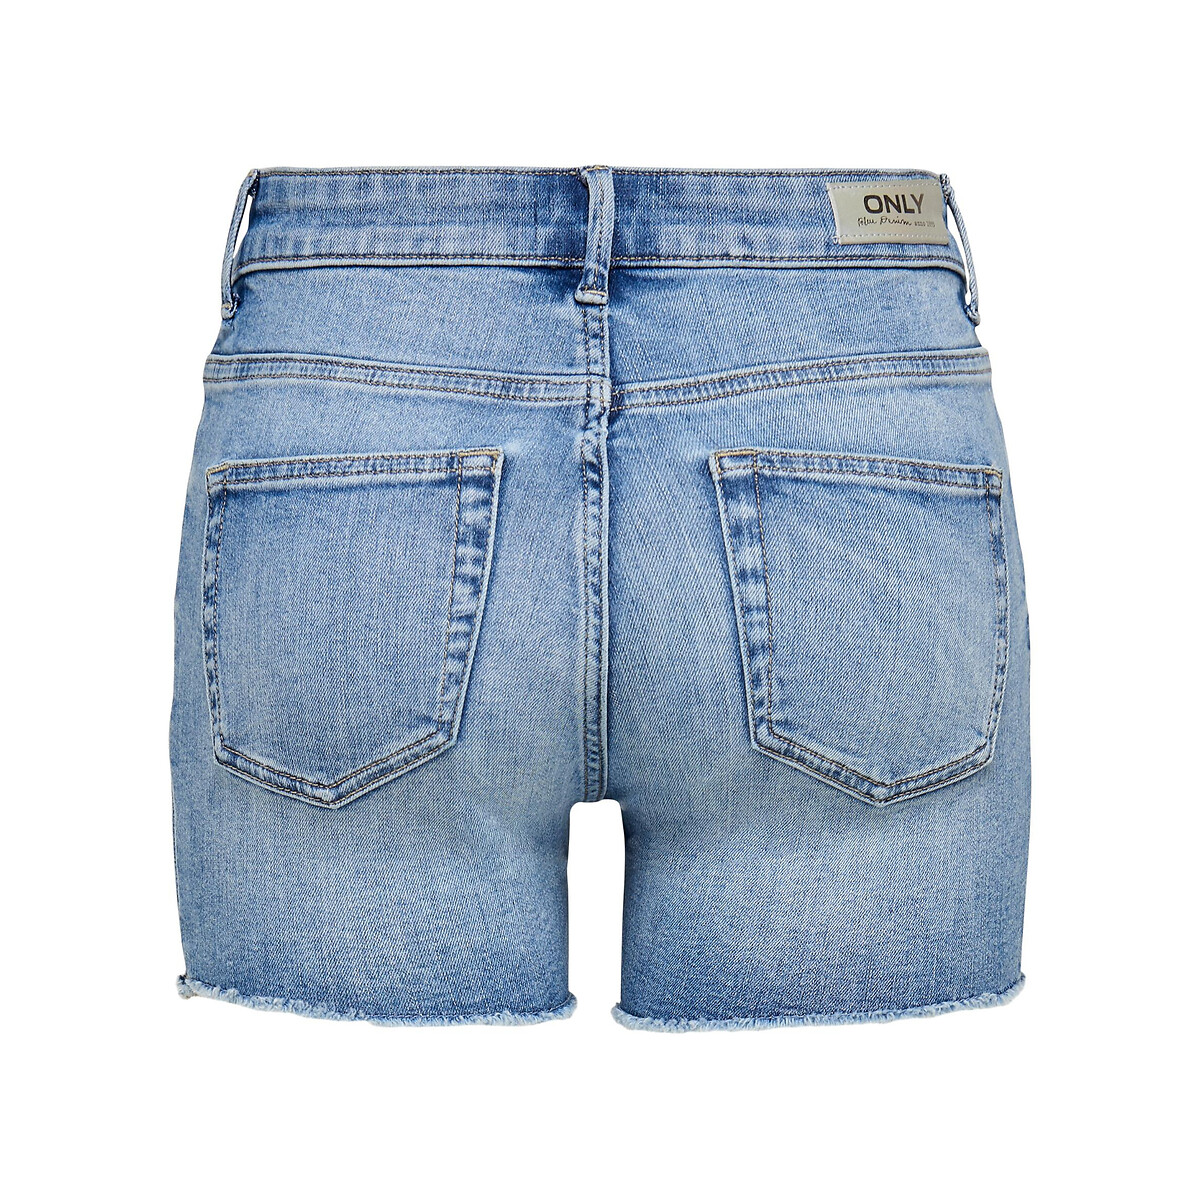 Шорты Из джинсовой ткани S синий LaRedoute, размер S - фото 5